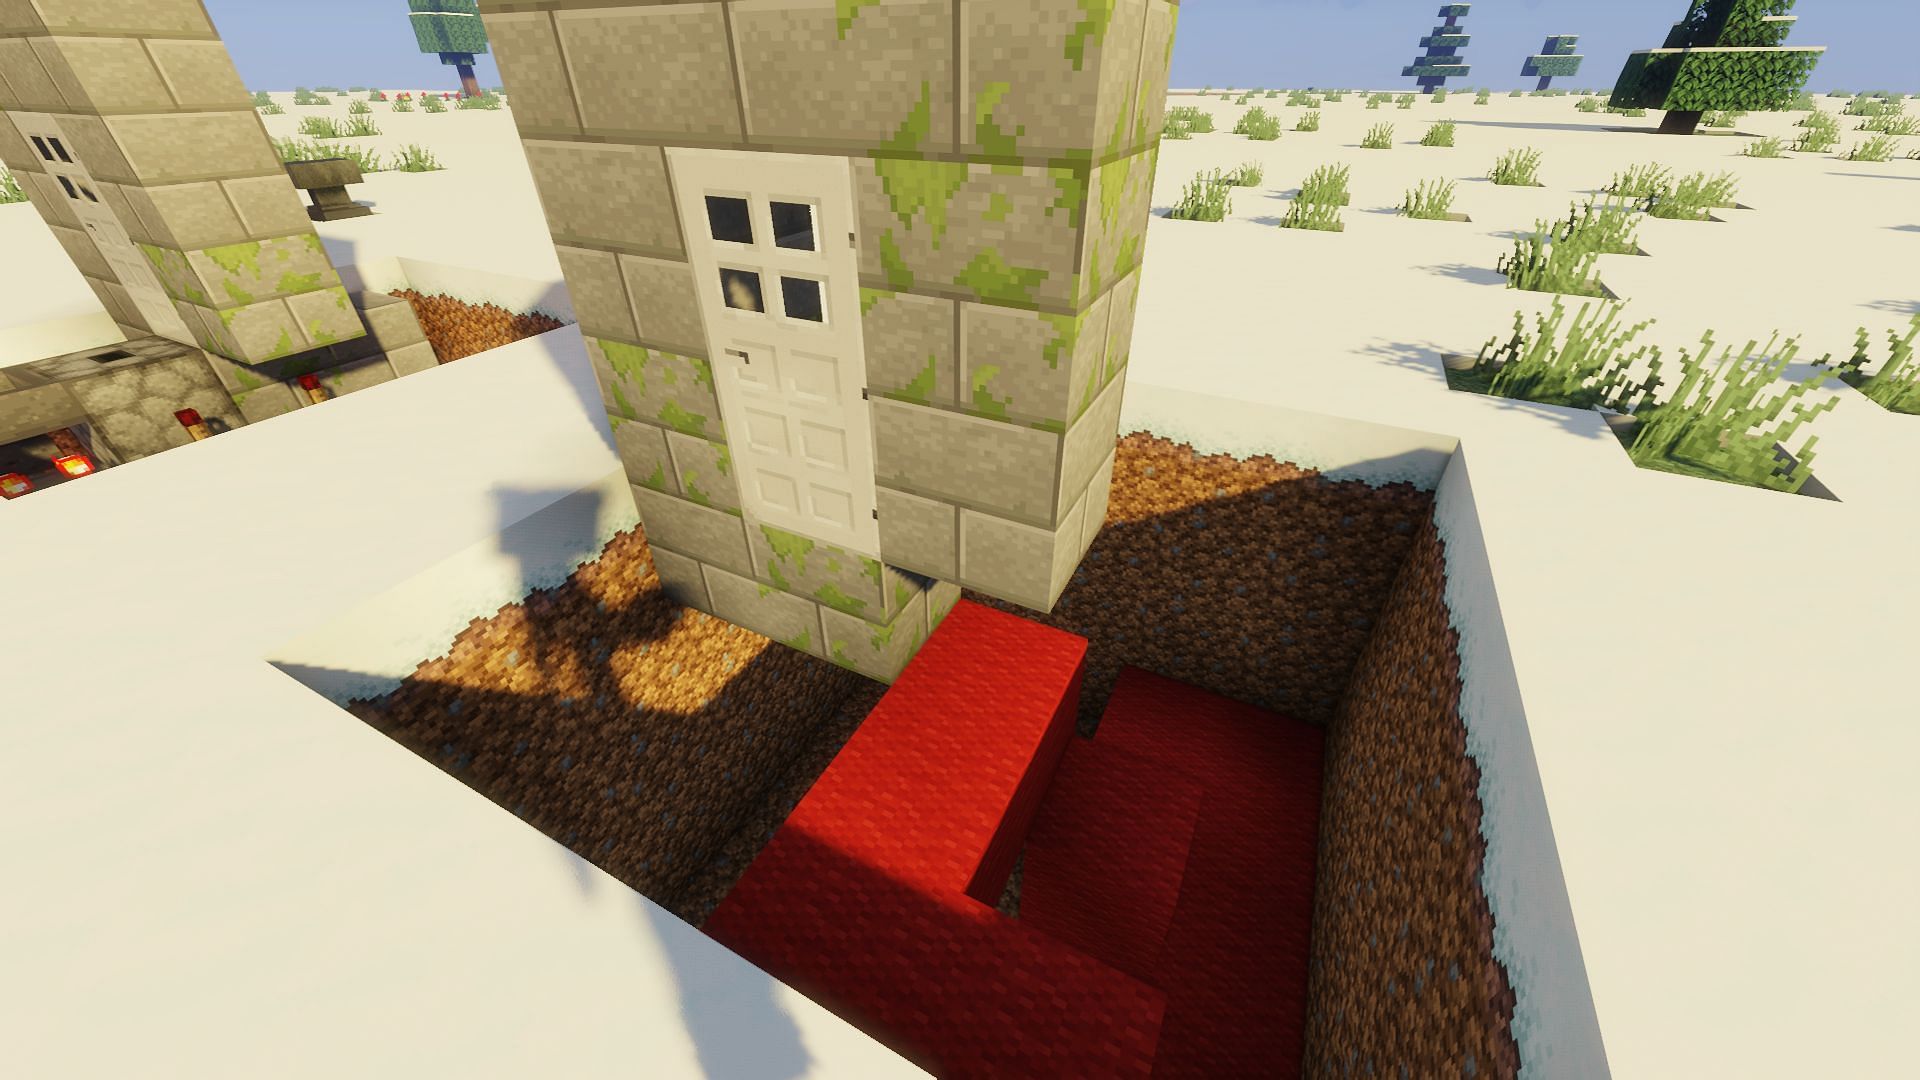 The door and doorframe (Image via Minecraft)